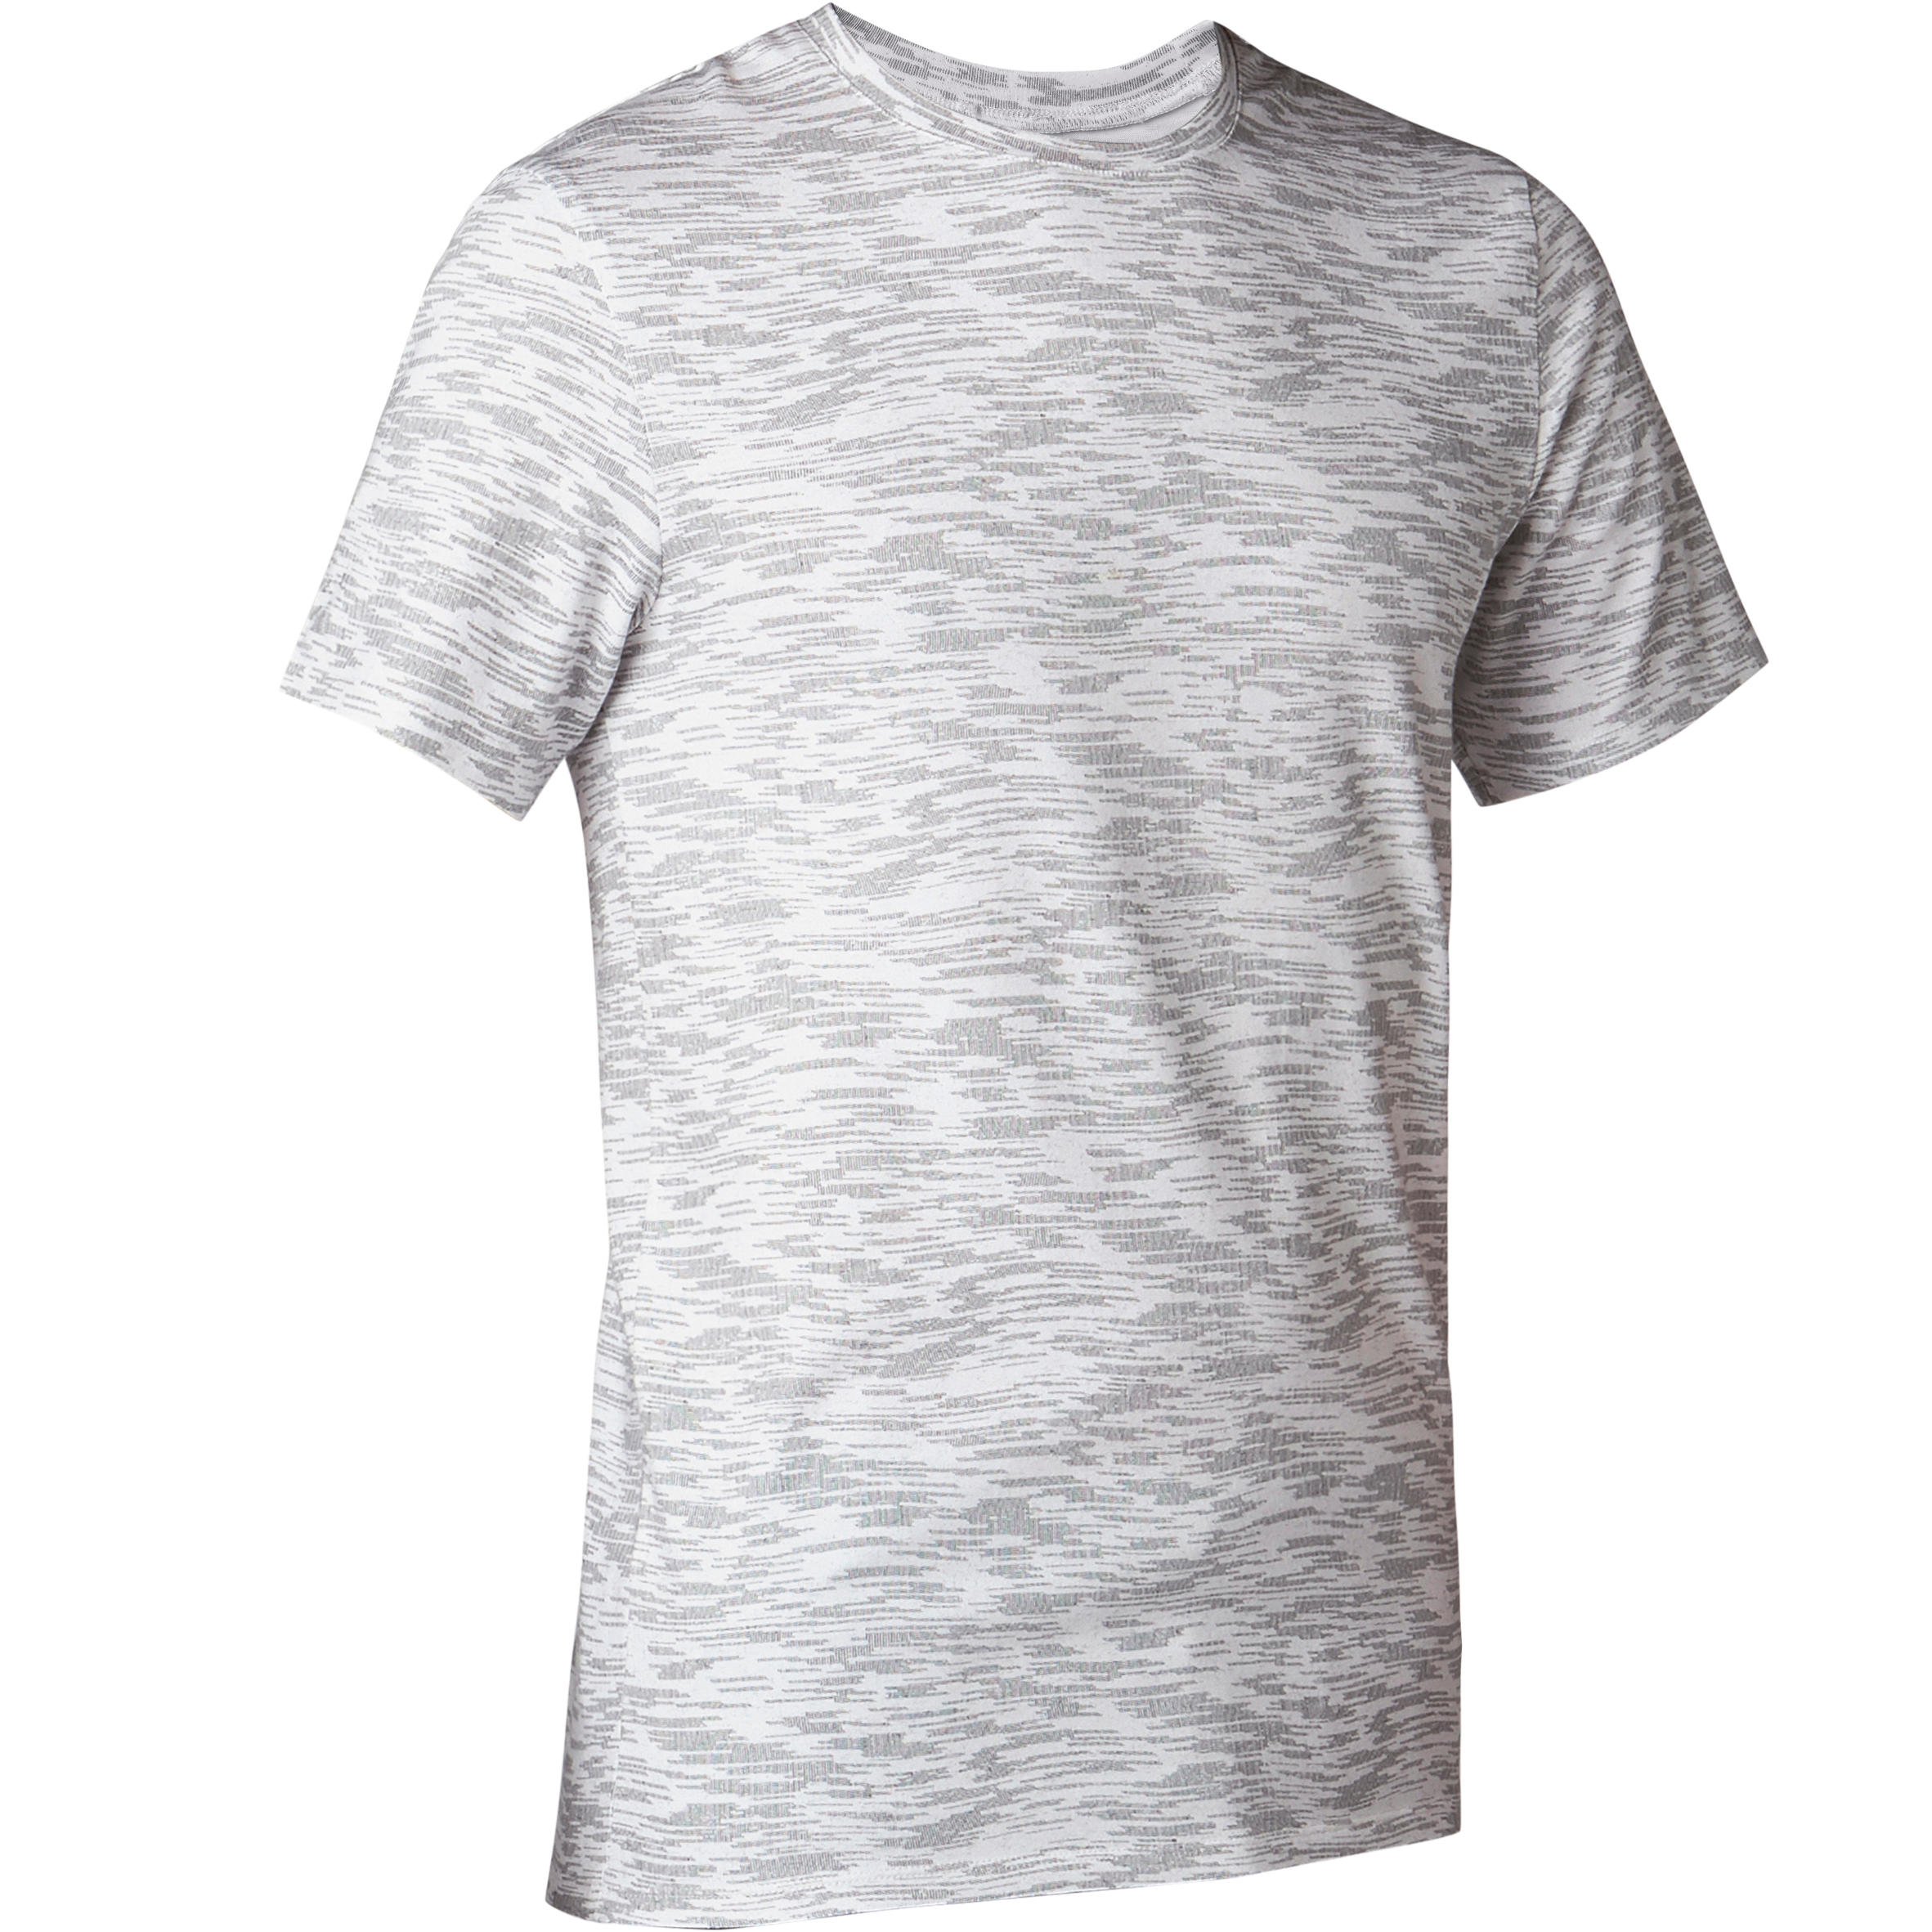 DOMYOS 500 Slim-Fit Gentle Gym & Pilates T-Shirt - White Print